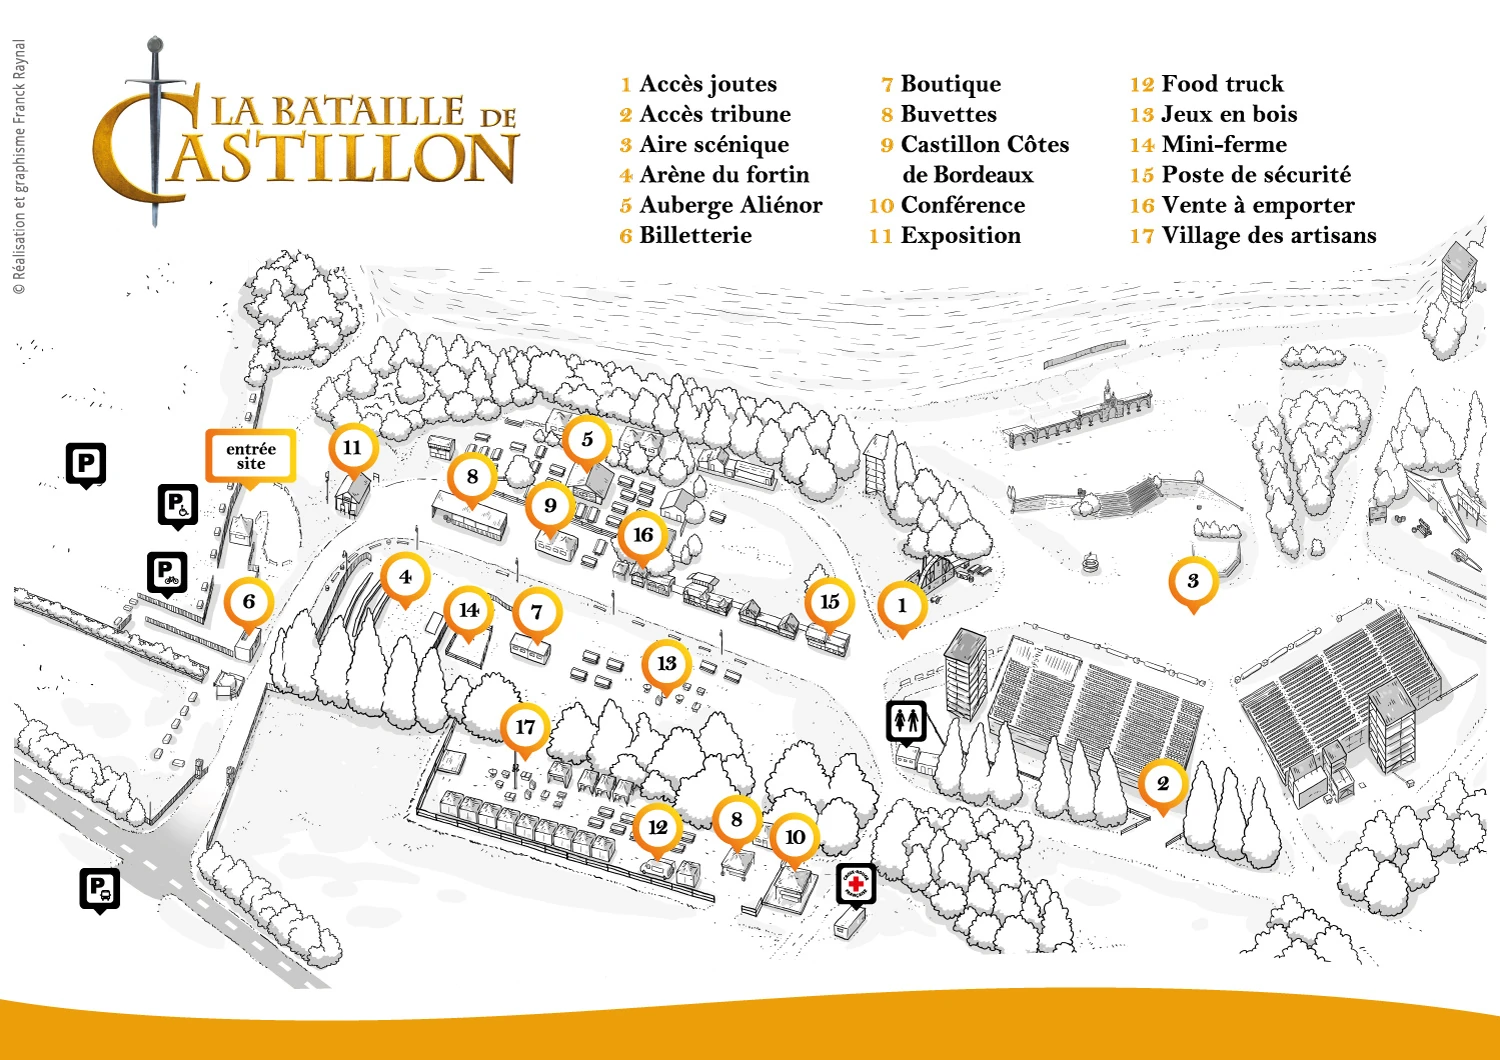 Plan du site Bataille de Castillon